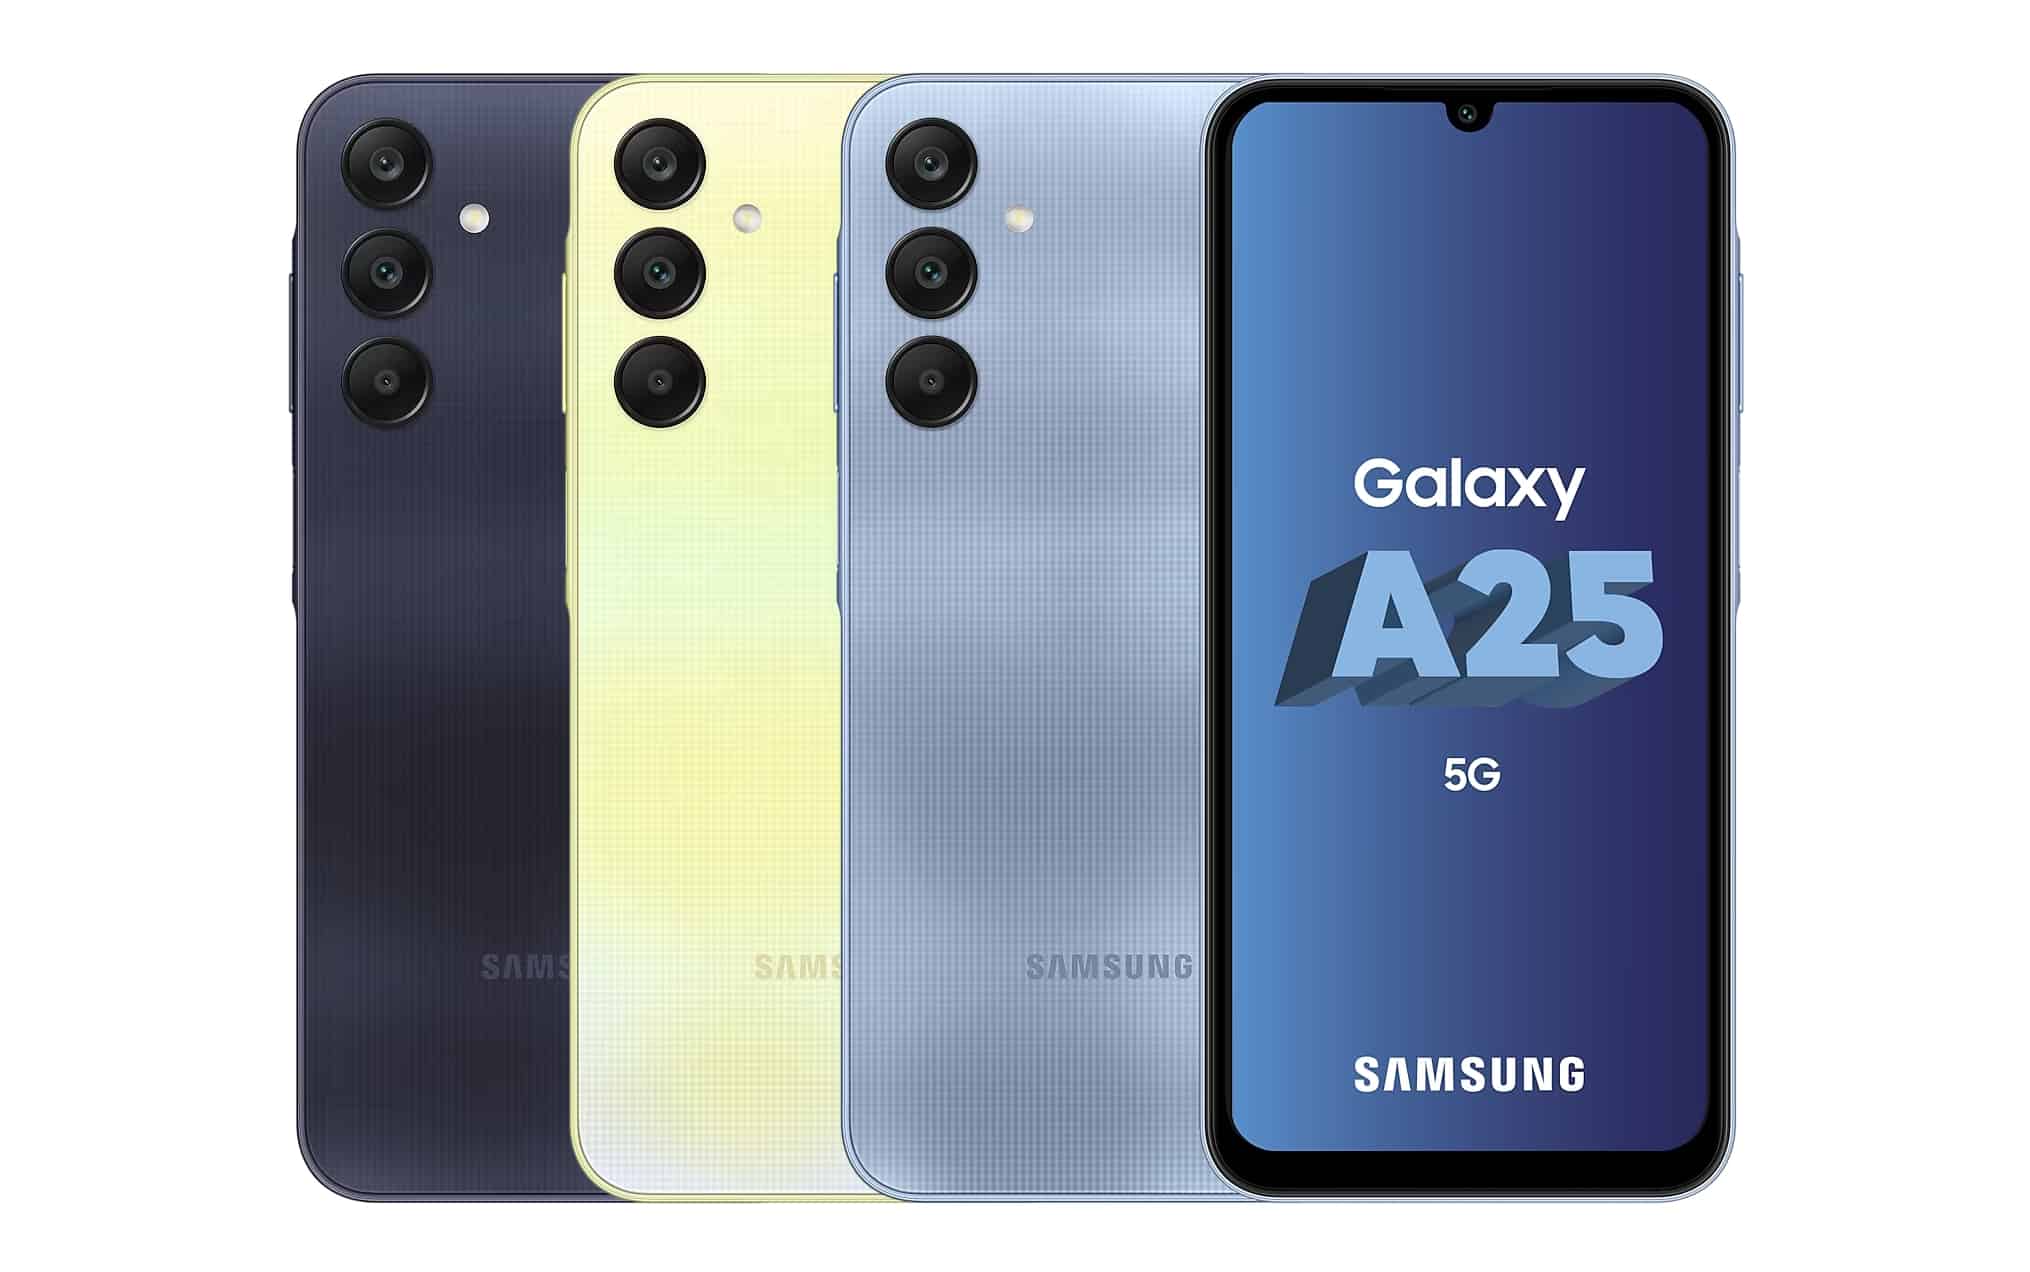 Samsung Galaxy A25 5G in Schwarz, Gelb und Blau mit Vertrag im Netz von Telekom, Vodafone, o2 Telefónica und 1&1 - die besten Deals!